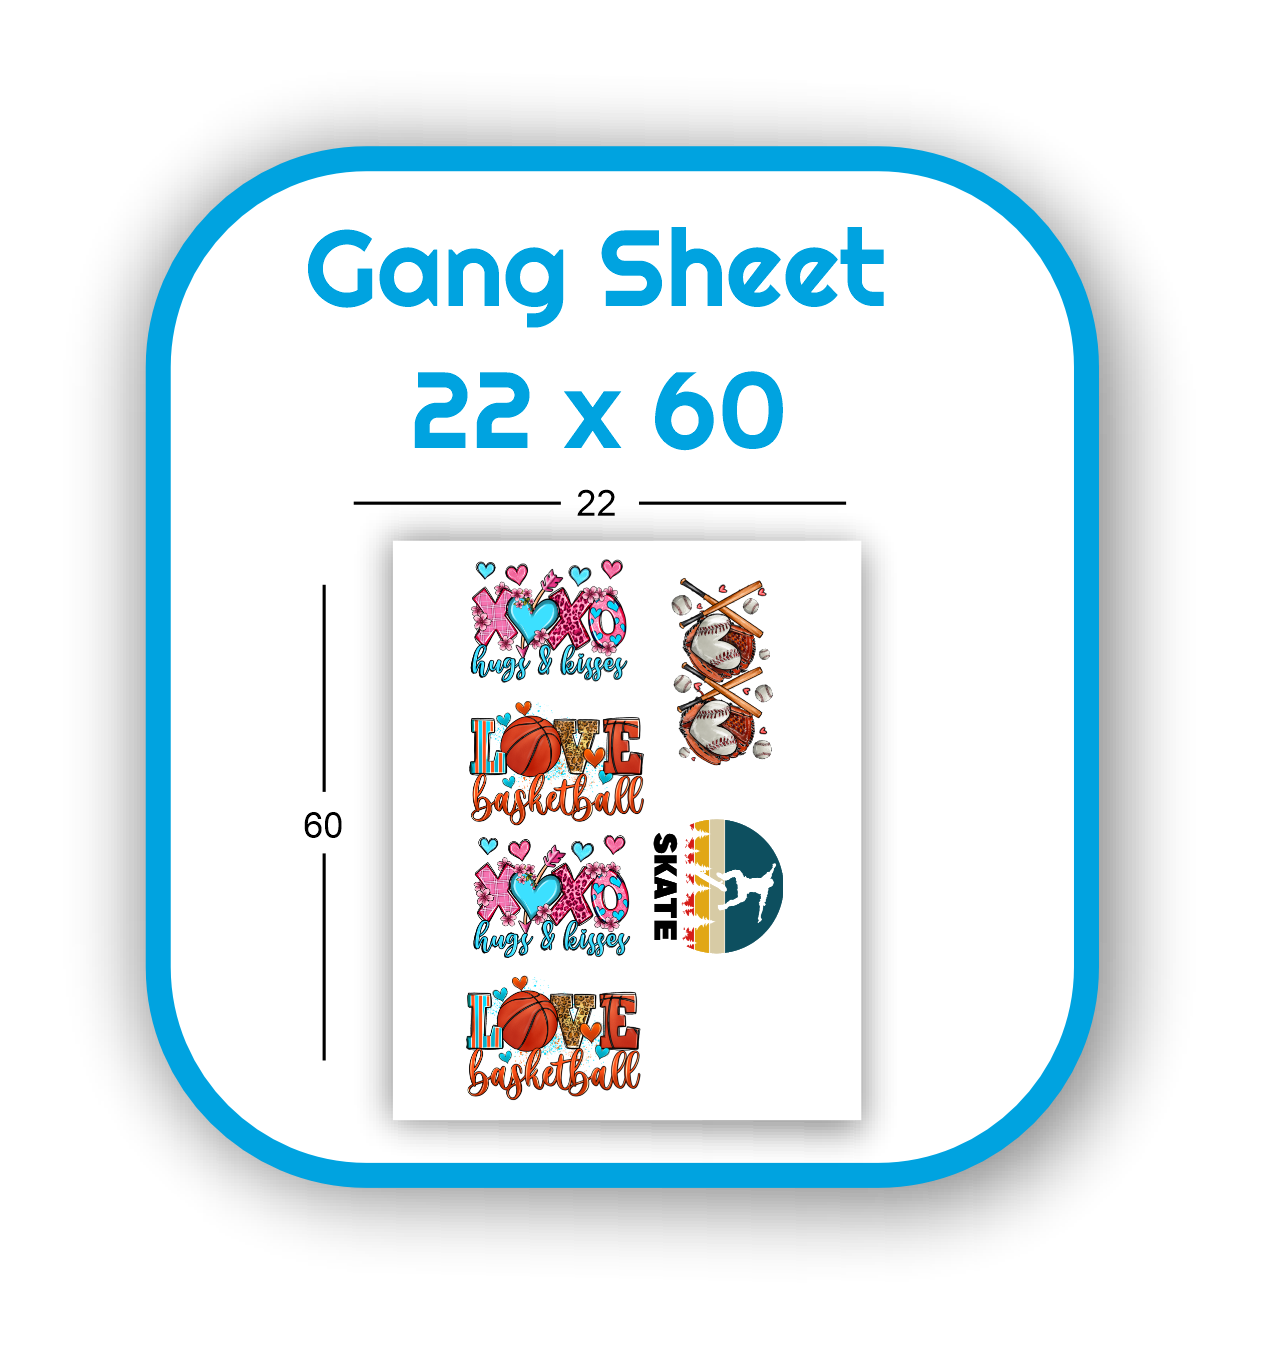 gang-sheet-22x60